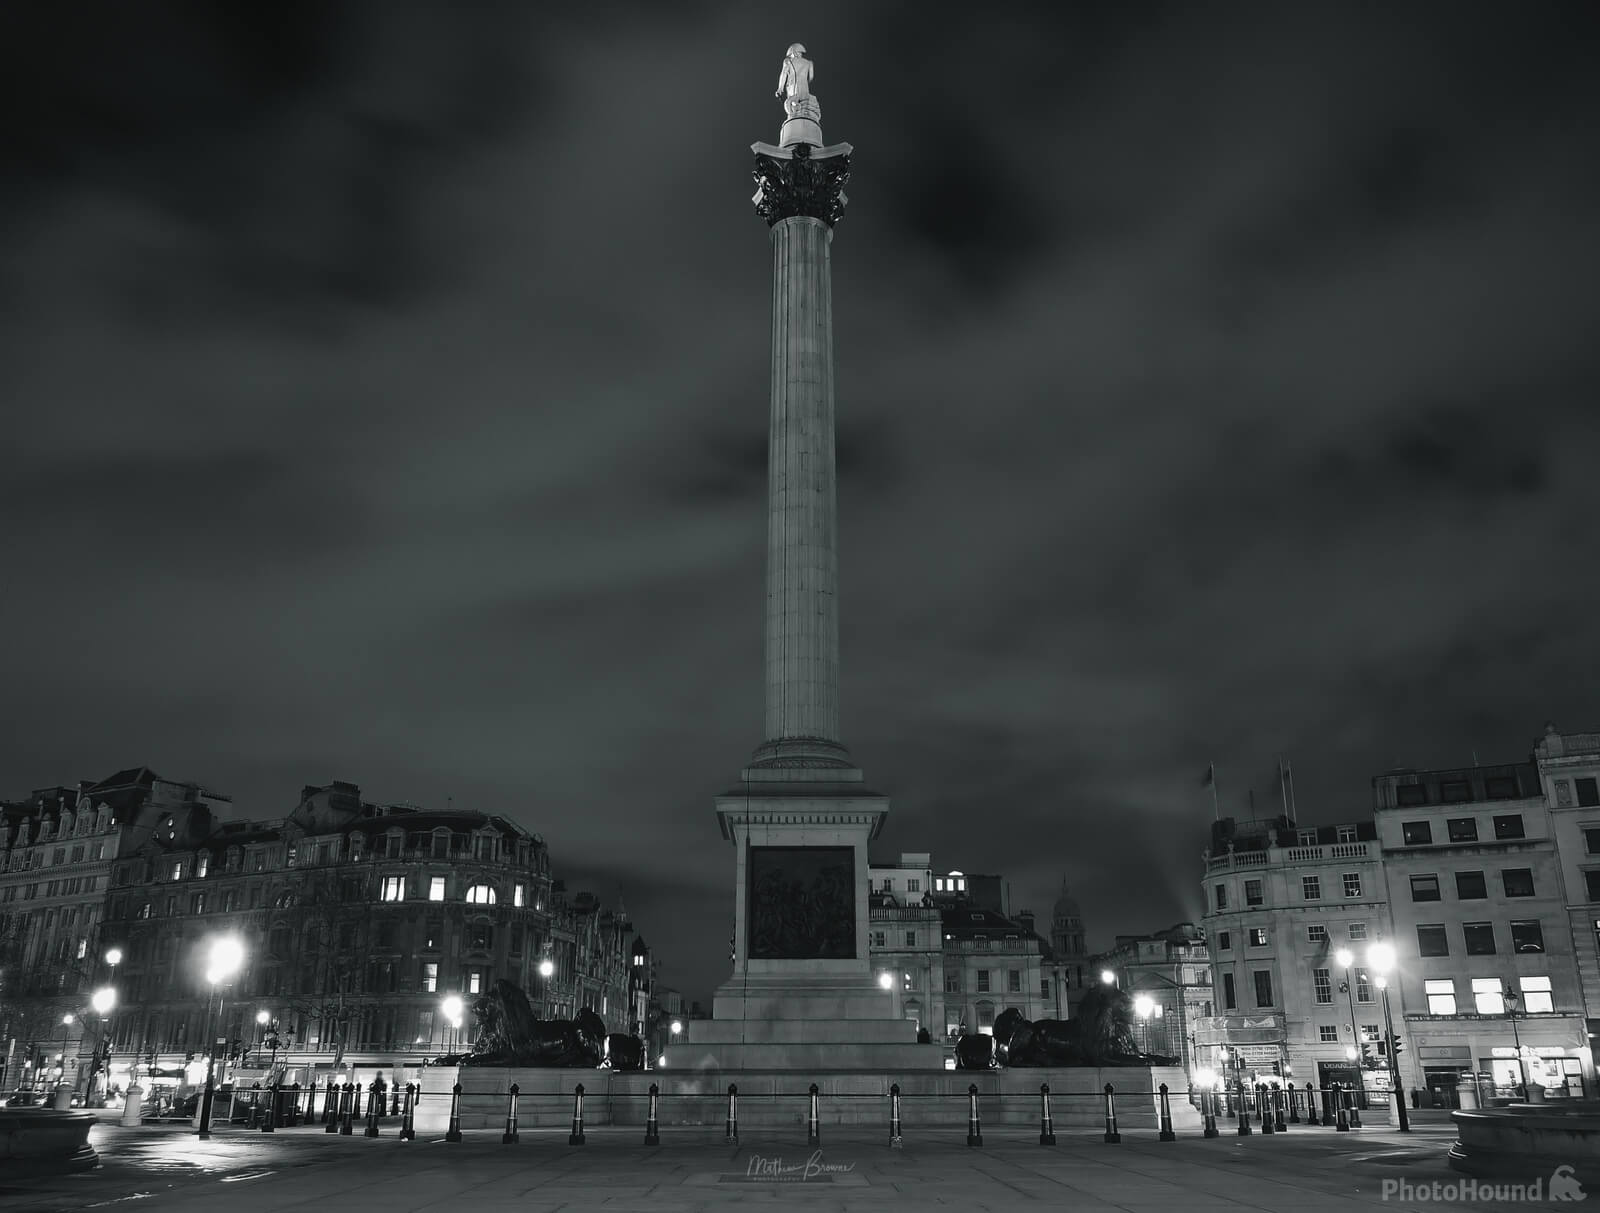 Image of Trafalgar Square by Mathew Browne